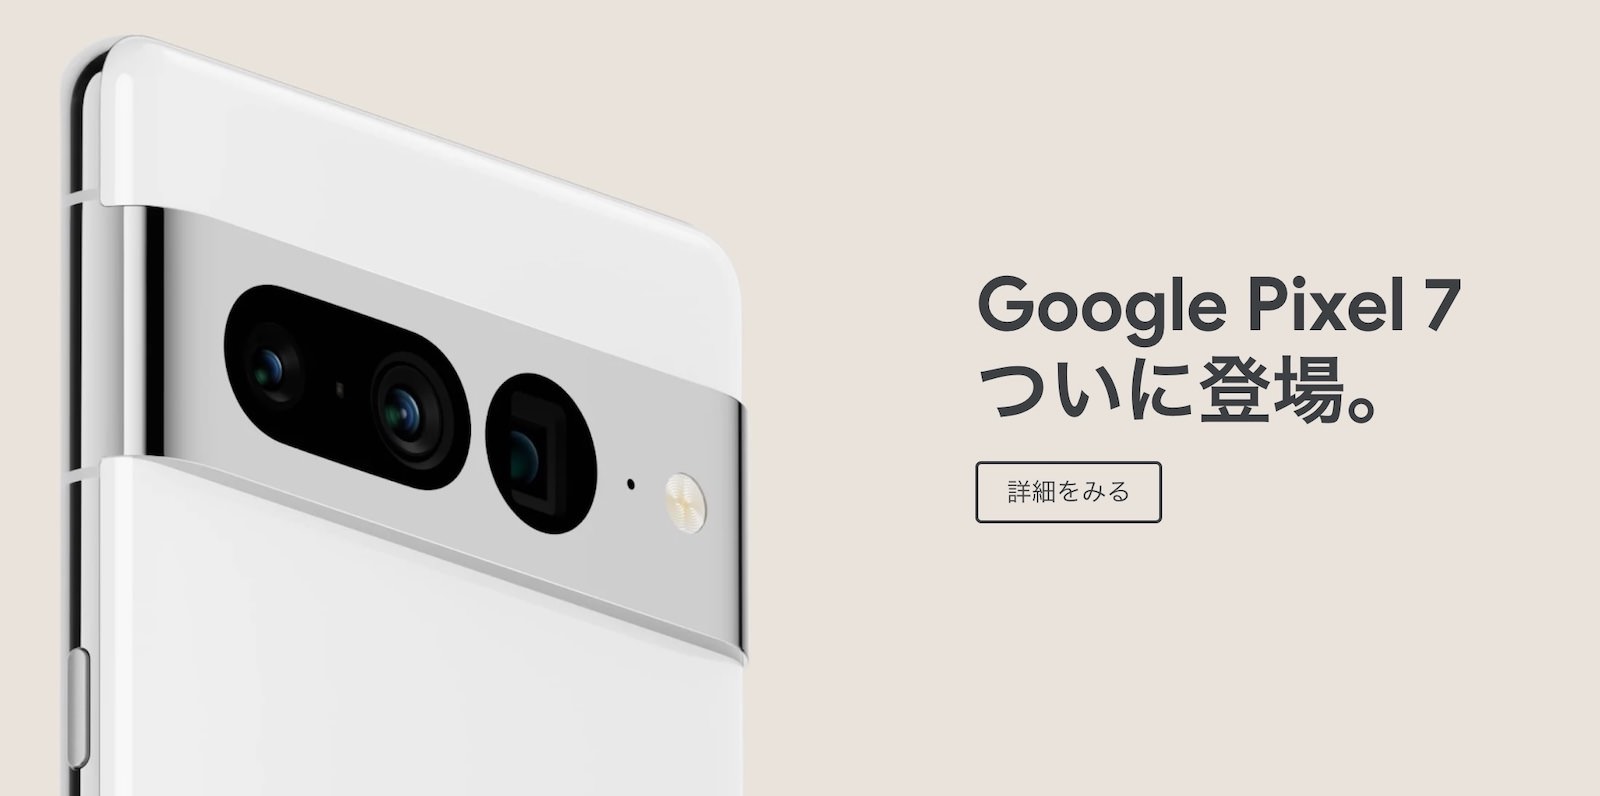 Google Pixel 7 coming soon